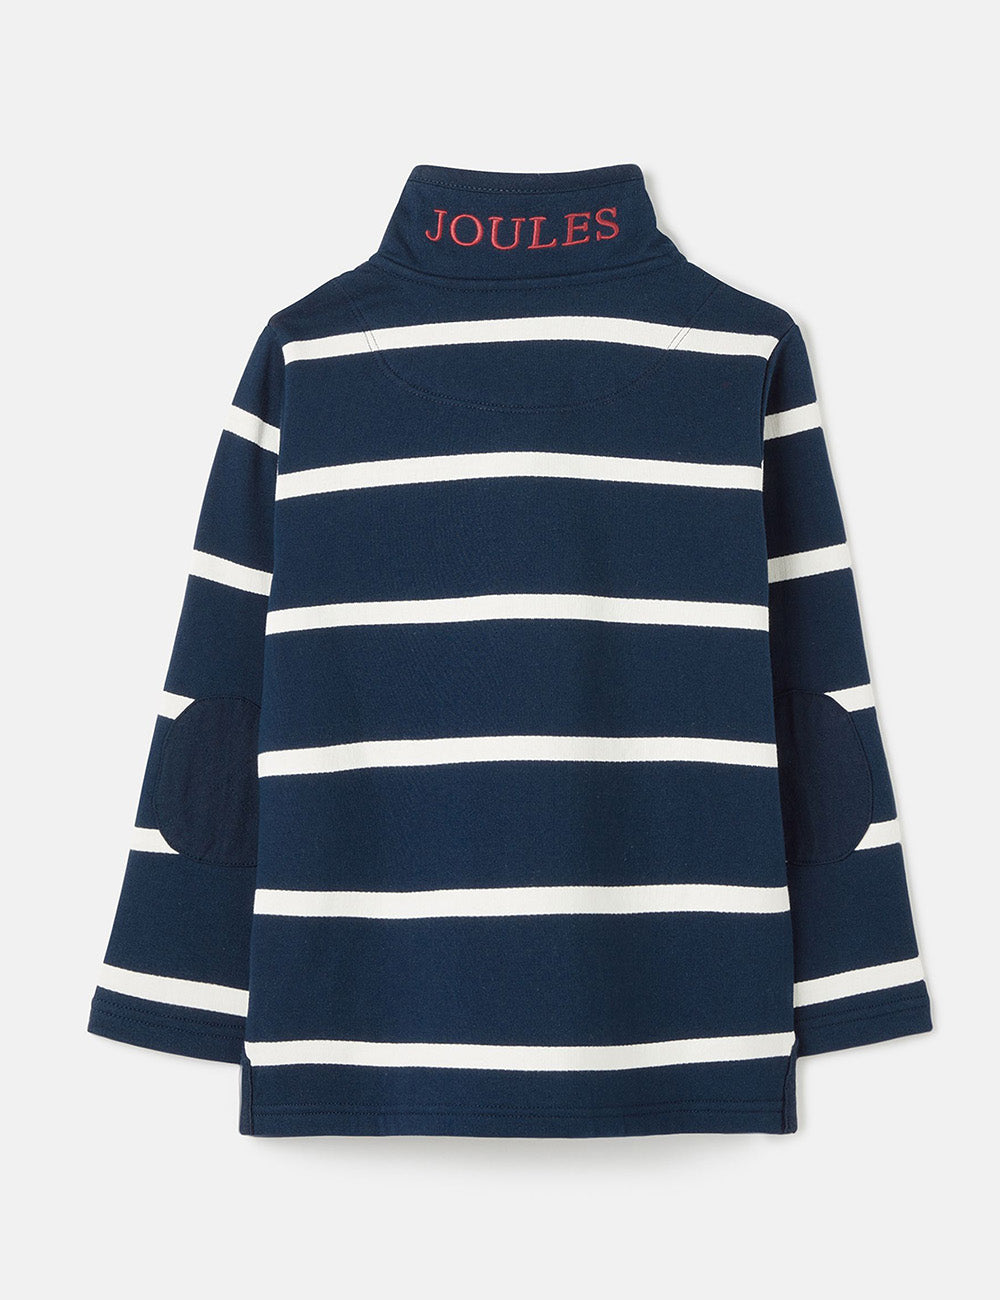 Joules Captain 1/4 Zip Sweatshirt - Navy Block Stripe